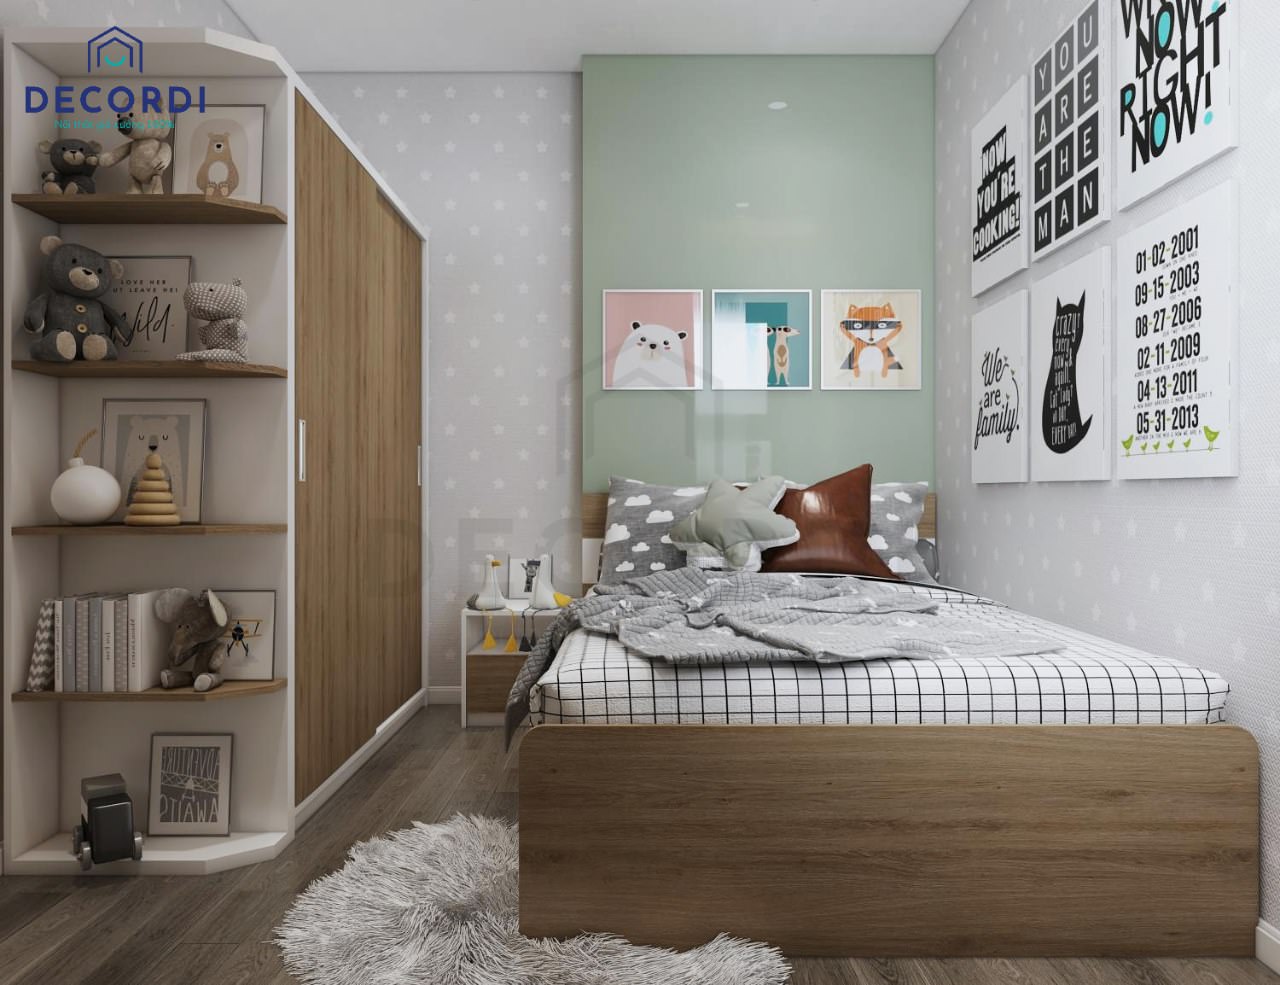 Giường gỗ MDF phủ Laminate với đường vân gỗ đẹp tự nhiên đem lại sự sống động cho phòng ngủ bé trai